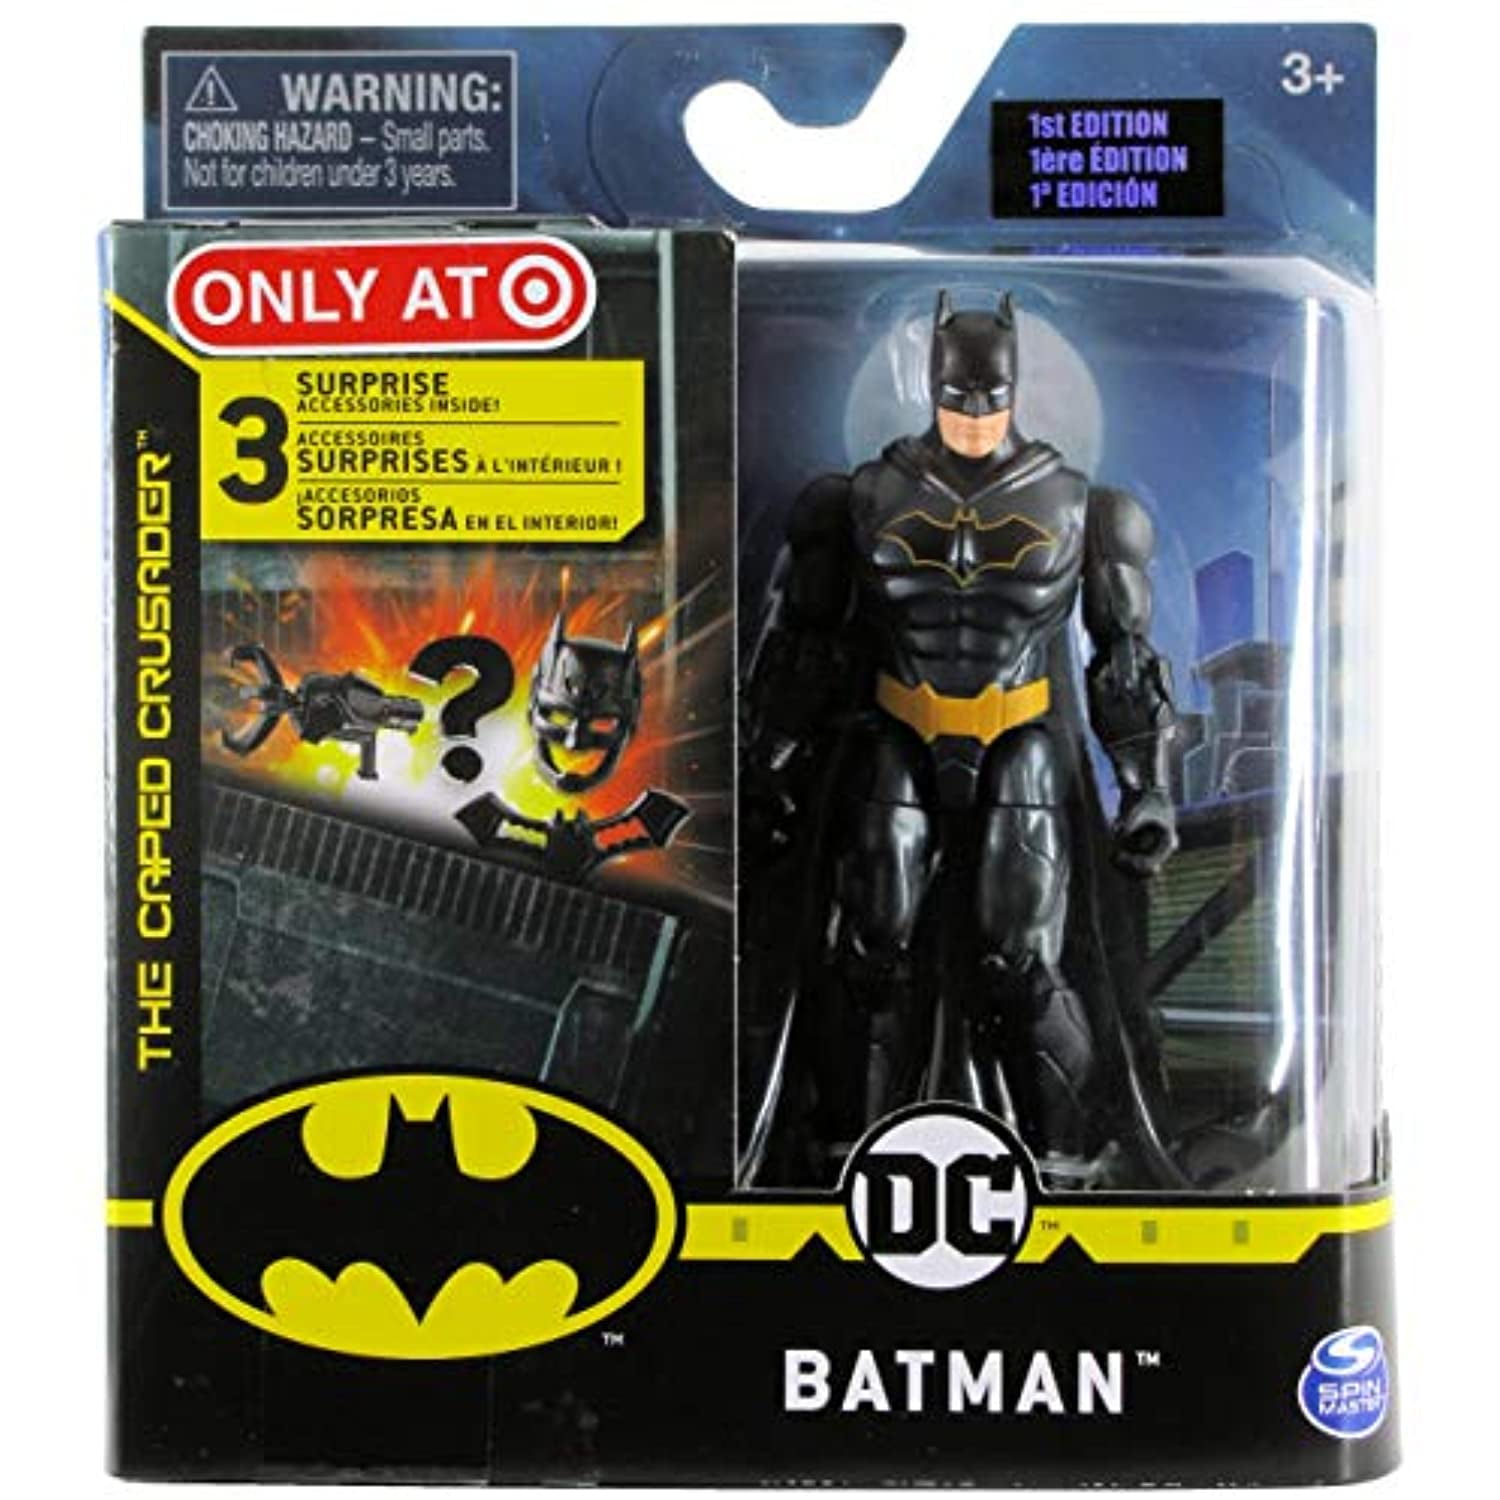 NEW 2020 DC Batman & Bane 12" Action Figure Set Target Exclusive 1st Edition 